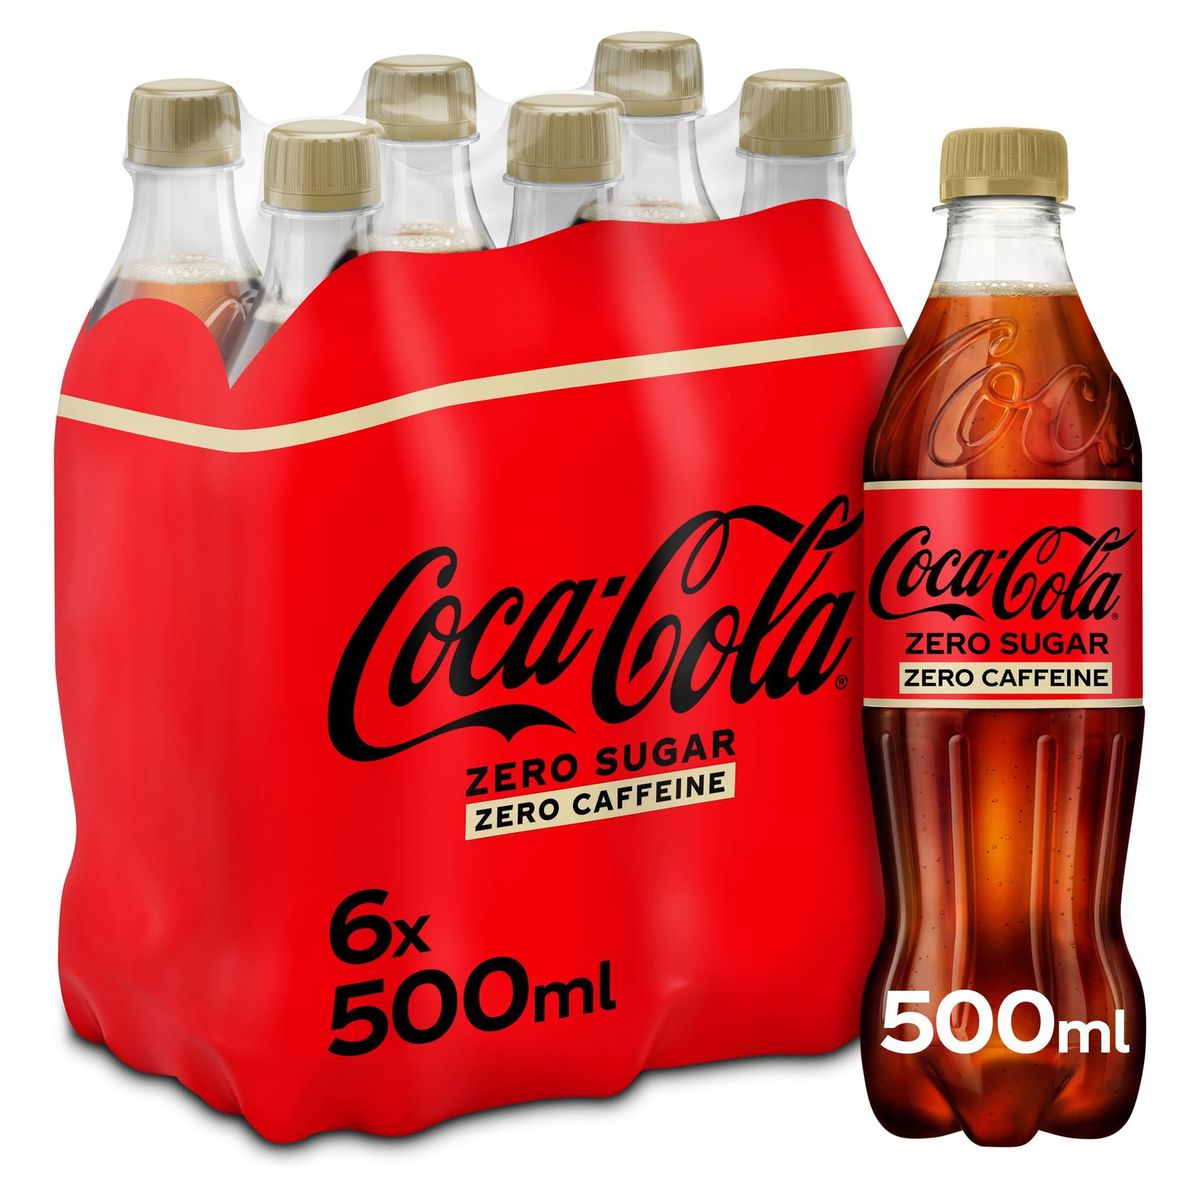 Coca-Cola Zero Sugar Zero Caffeine Coke Soft drink 6 x 500 ml